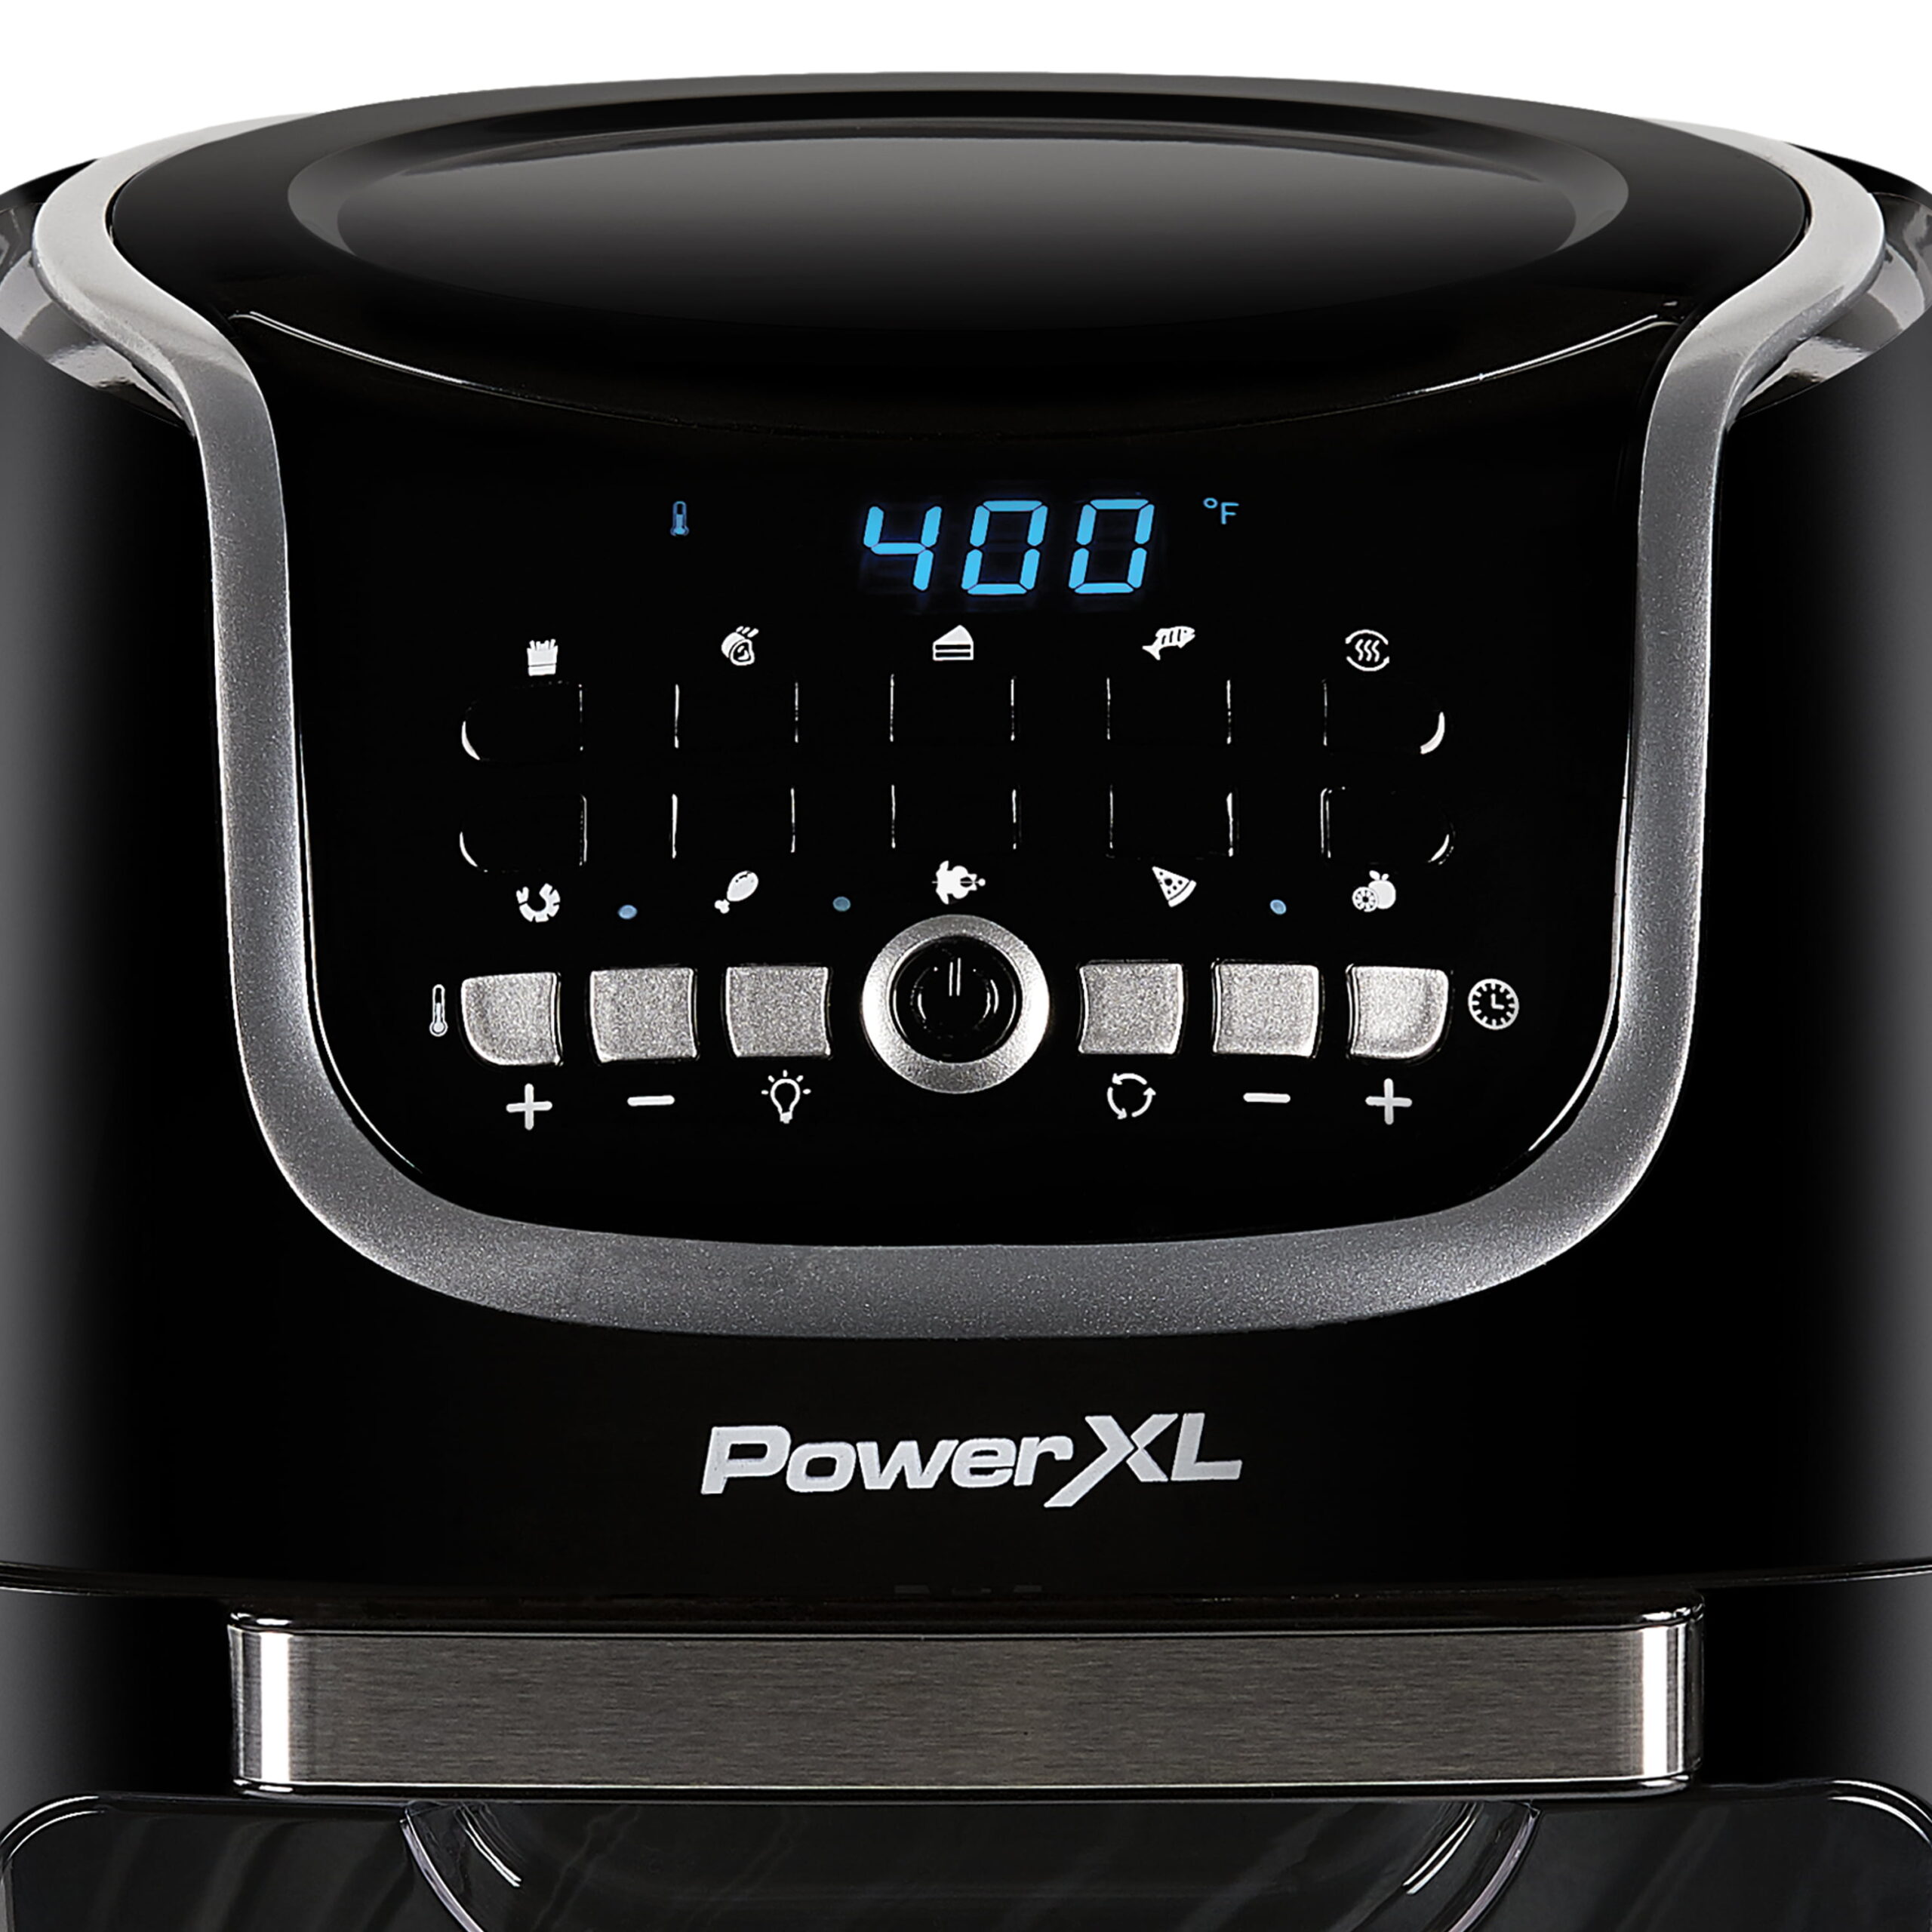 PowerXL Vortex Pro 4-Qt. Air Fryer Black